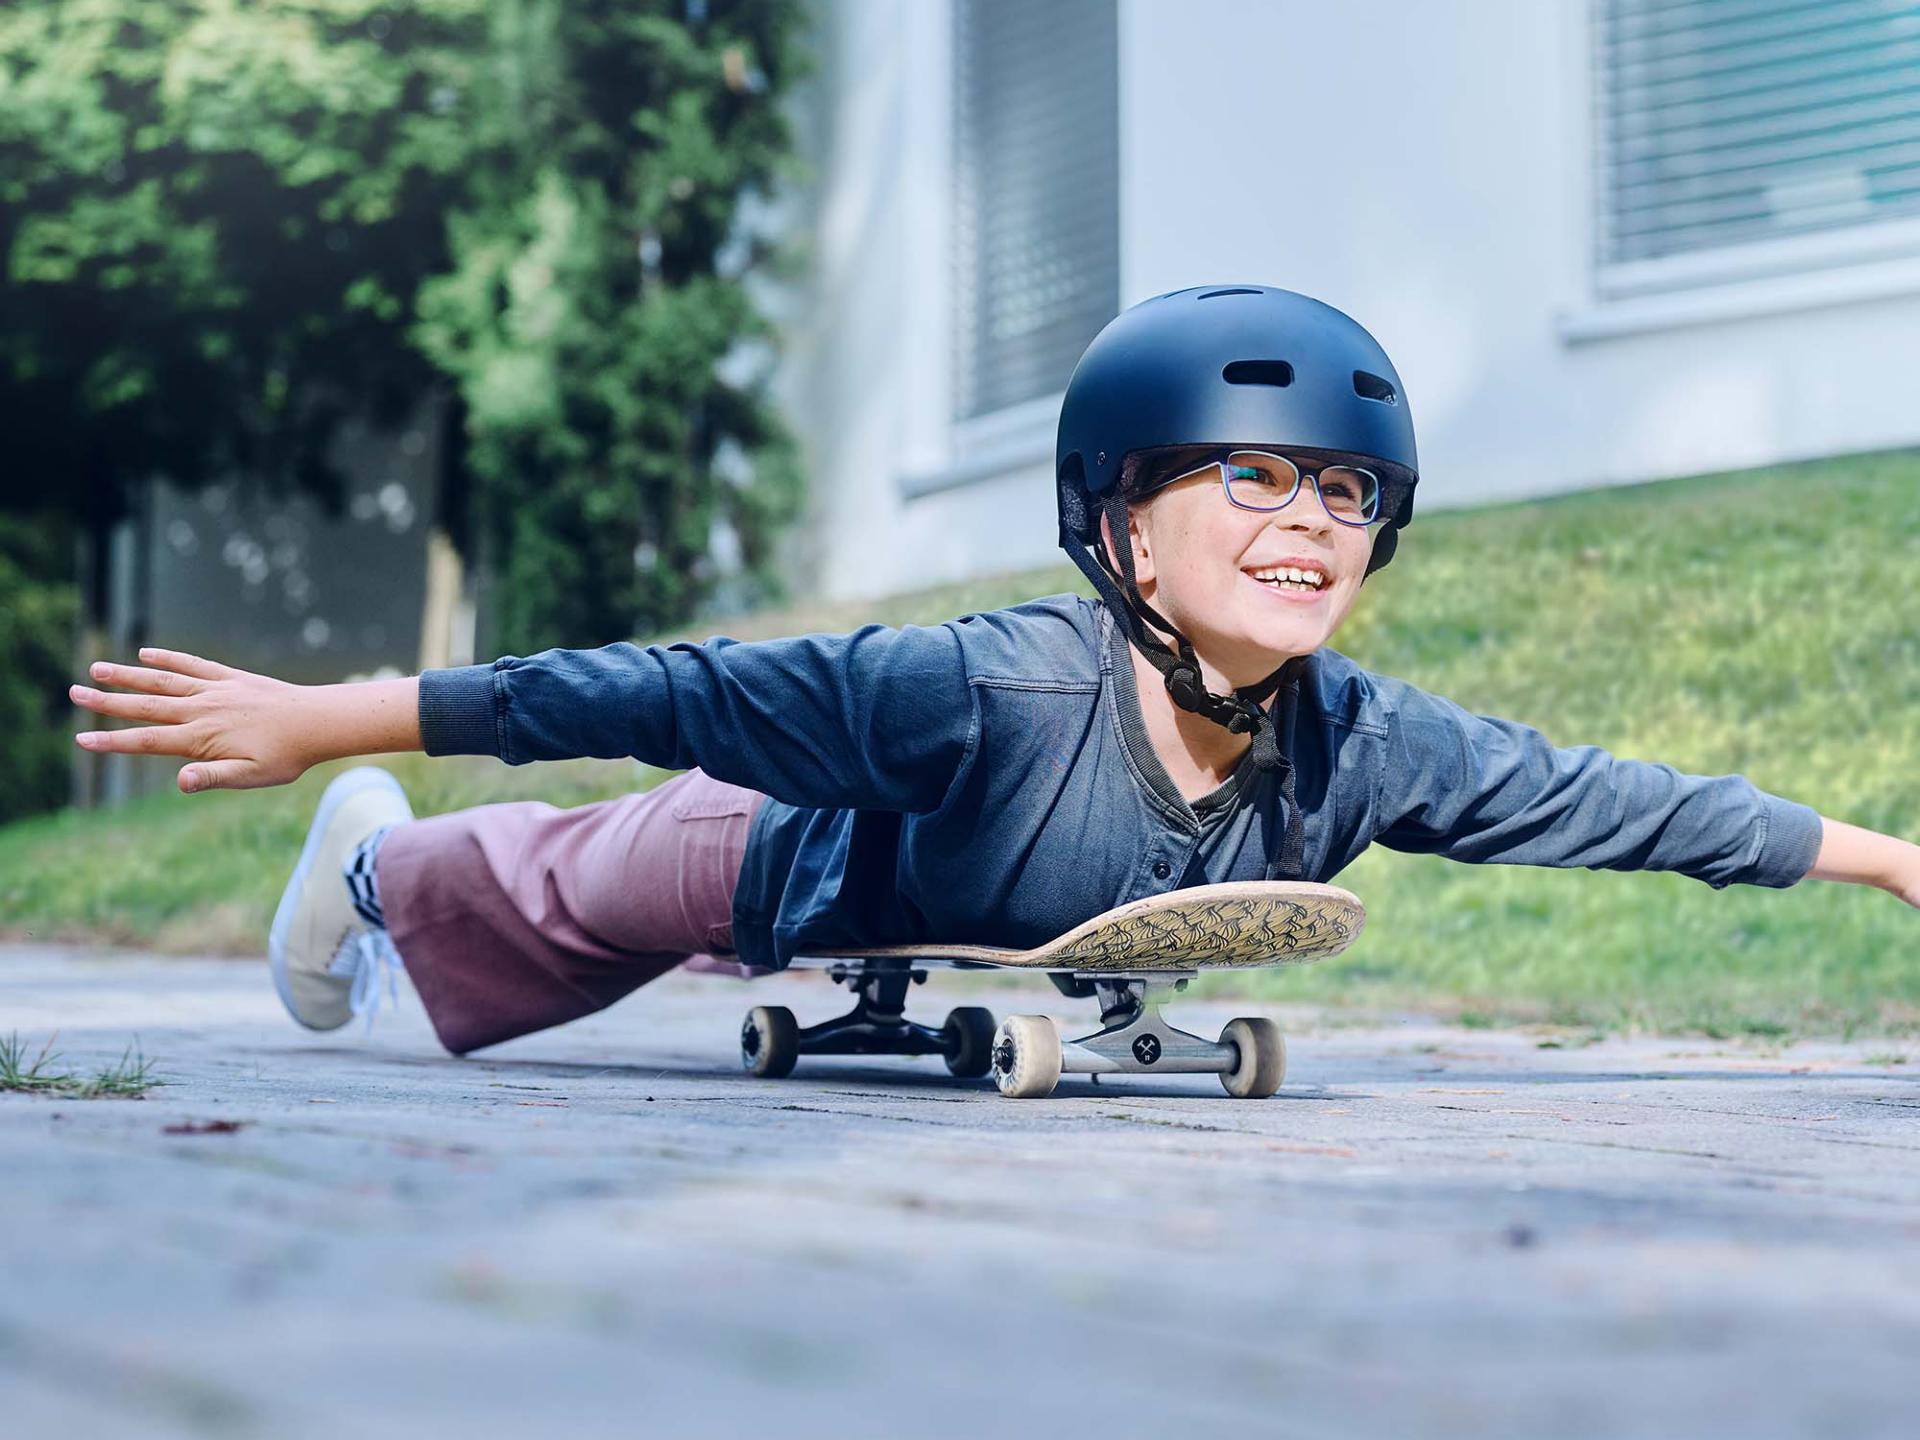 ヘルメットとメガネを付け、スケートボードに寝そべり、両手を広げて坂道を下る少女。